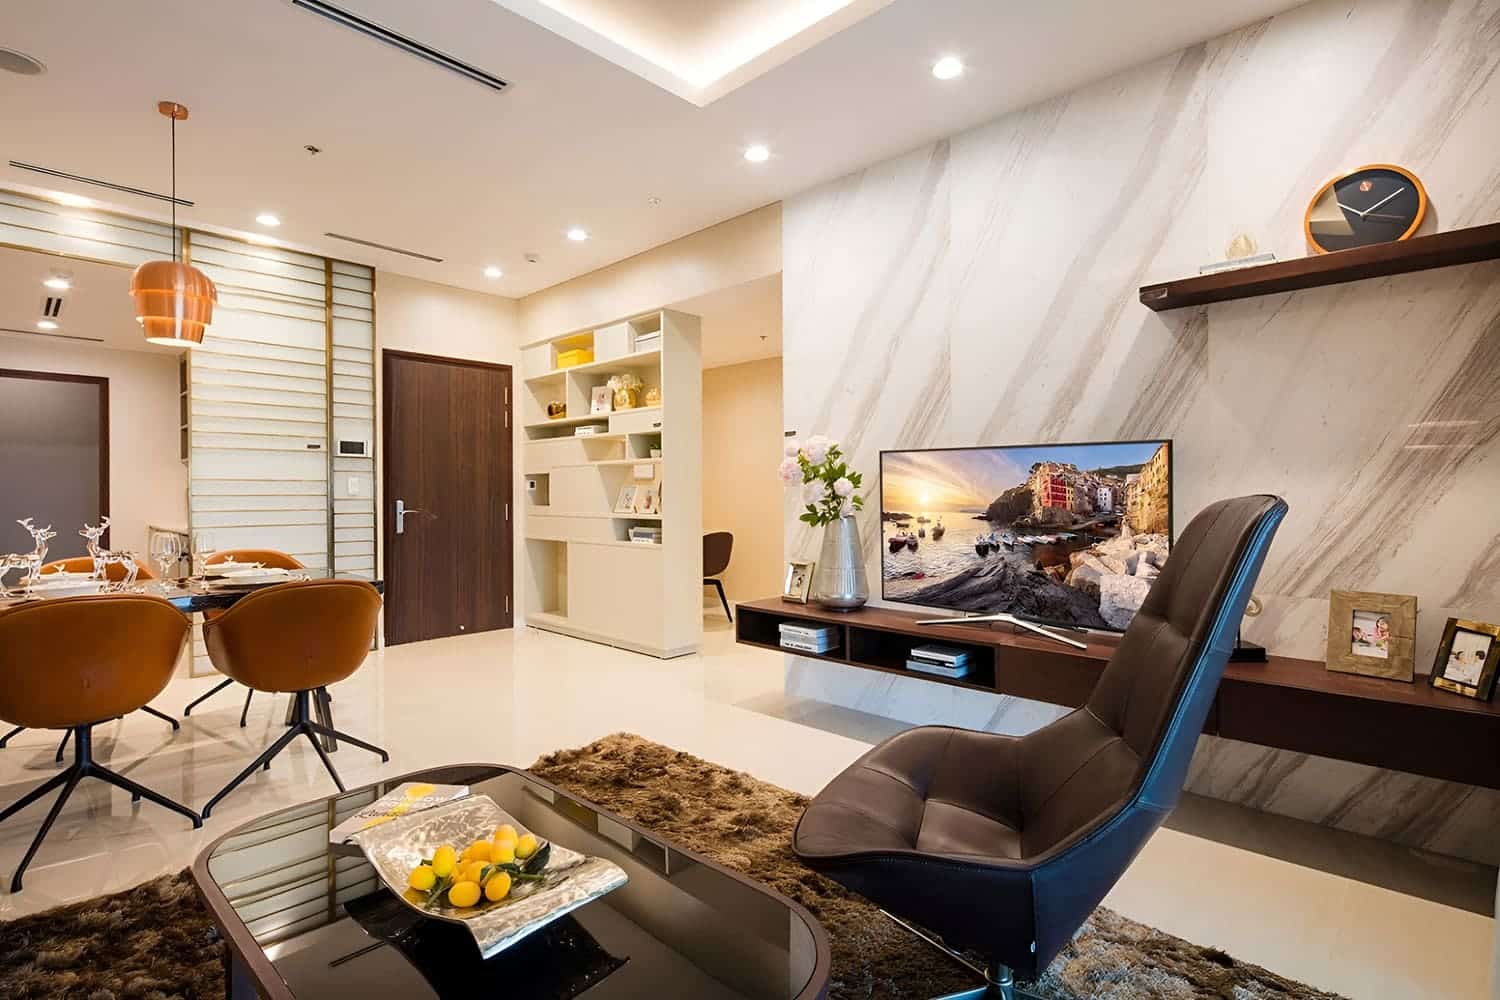 Hình ảnh nội thất căn hộ One Verandah được thiết kế sang trọng, tiện nghi, hiện đại.